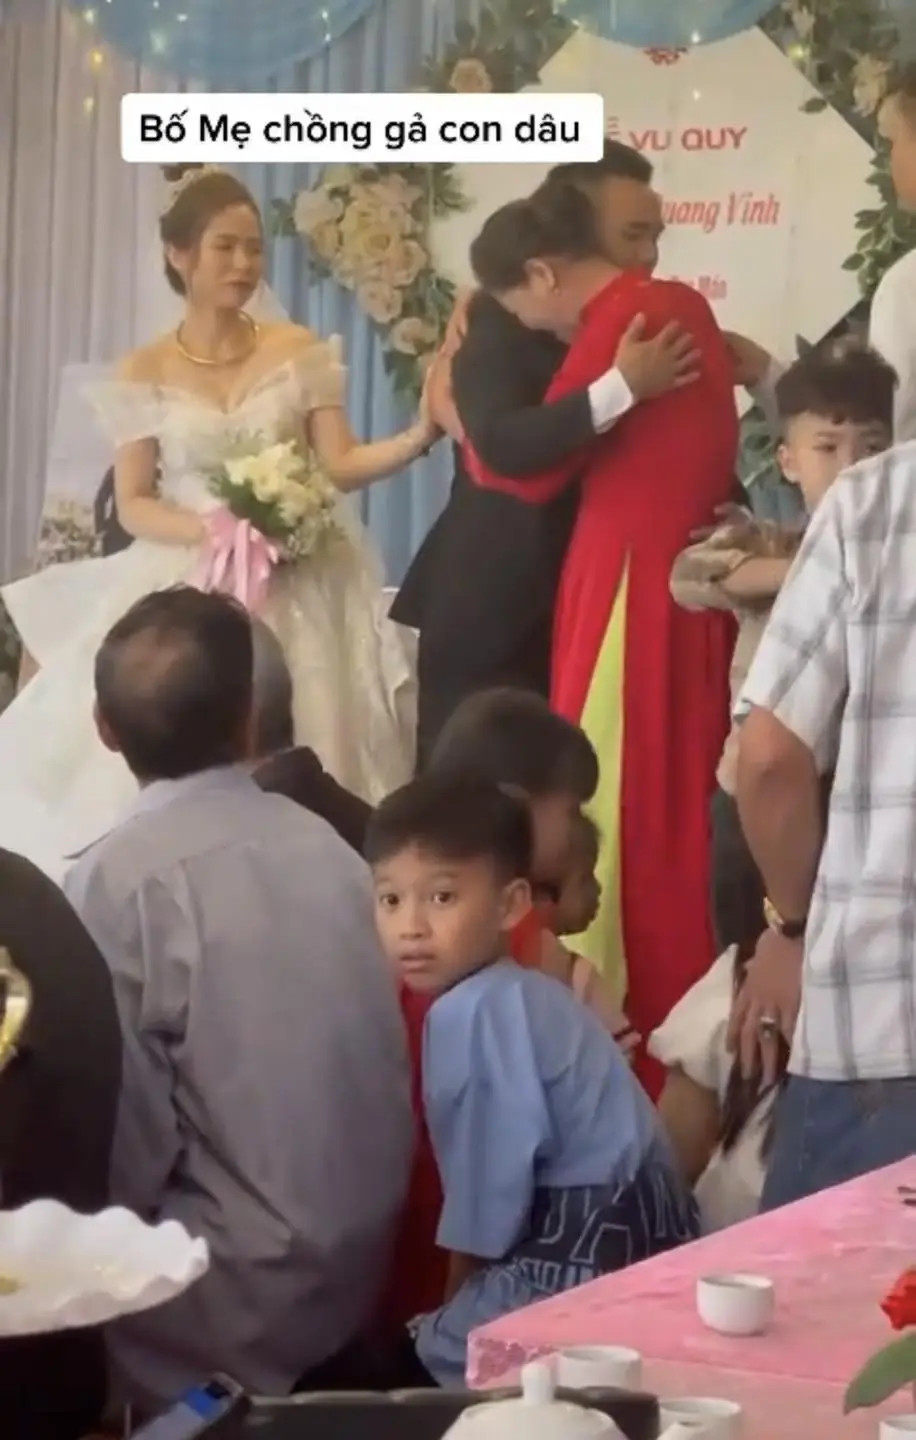 Câu chuyện mẹ chồng gả con dâu đi lấy chồng mới ở Phú Thọ khiến dư luận quan tâm.